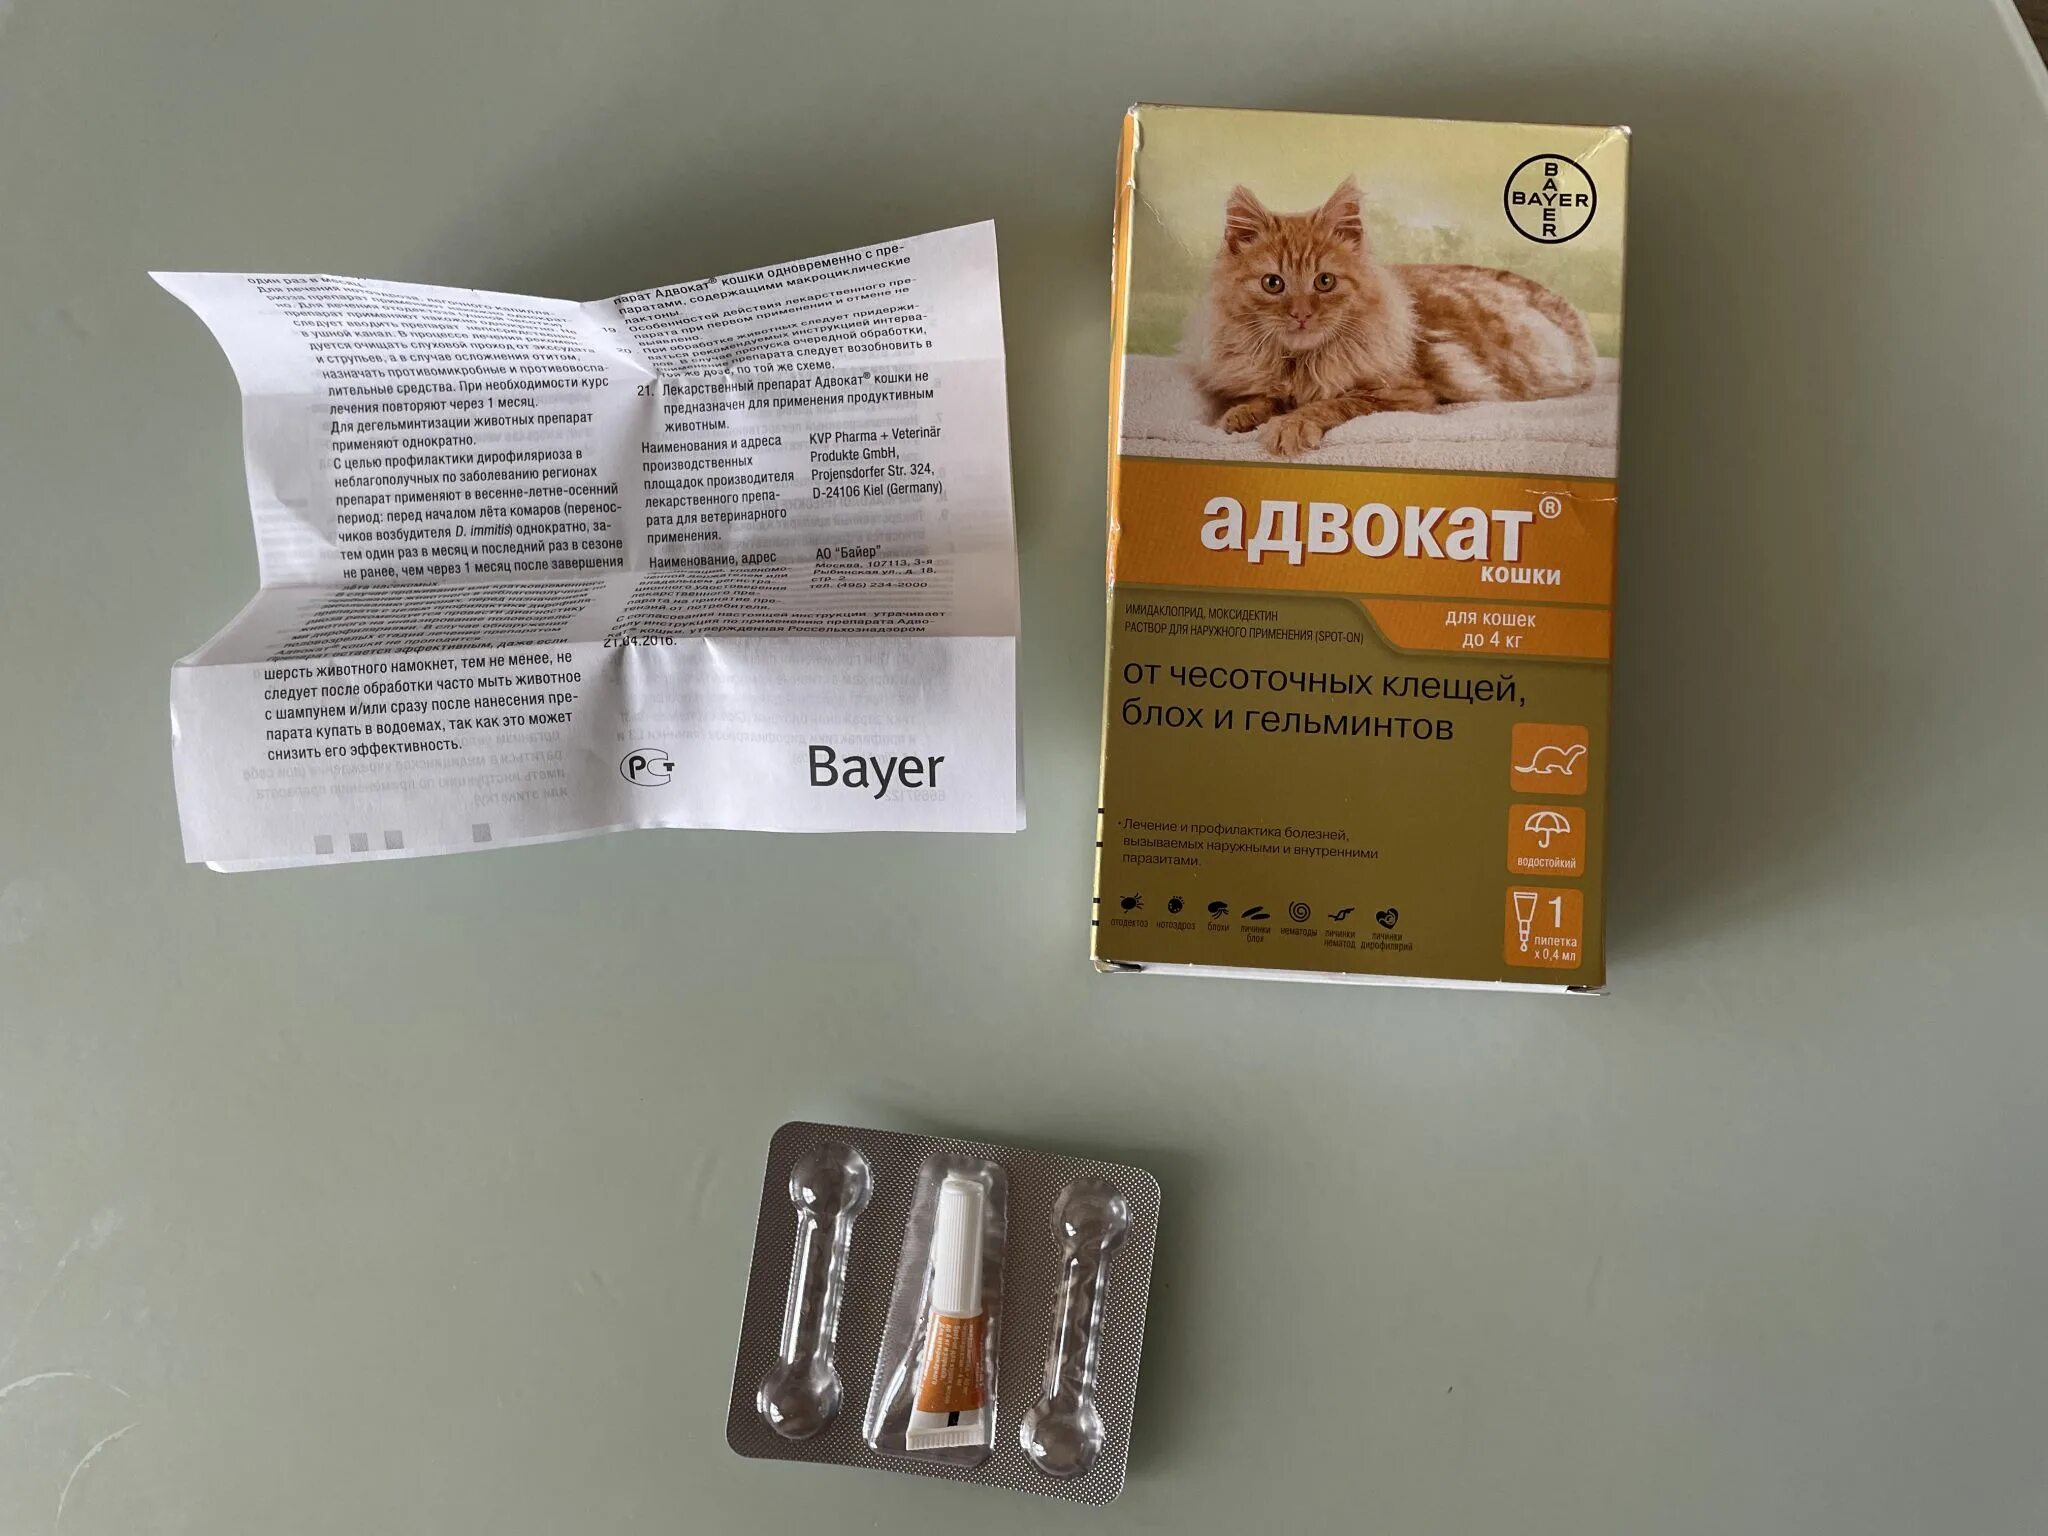 Капли адвокат купить. Bayer адвокат для кошек до 4 кг (3 пипетки х 0,4 мл). Bayer адвокат капли для кошек до 4 кг 1 пипетка. Адвокат Байер для кошек. Адвокат (Bayer) капли от чесоточных клещей, блох и гельминтов для кошек более 4 кг (3 пипетки).